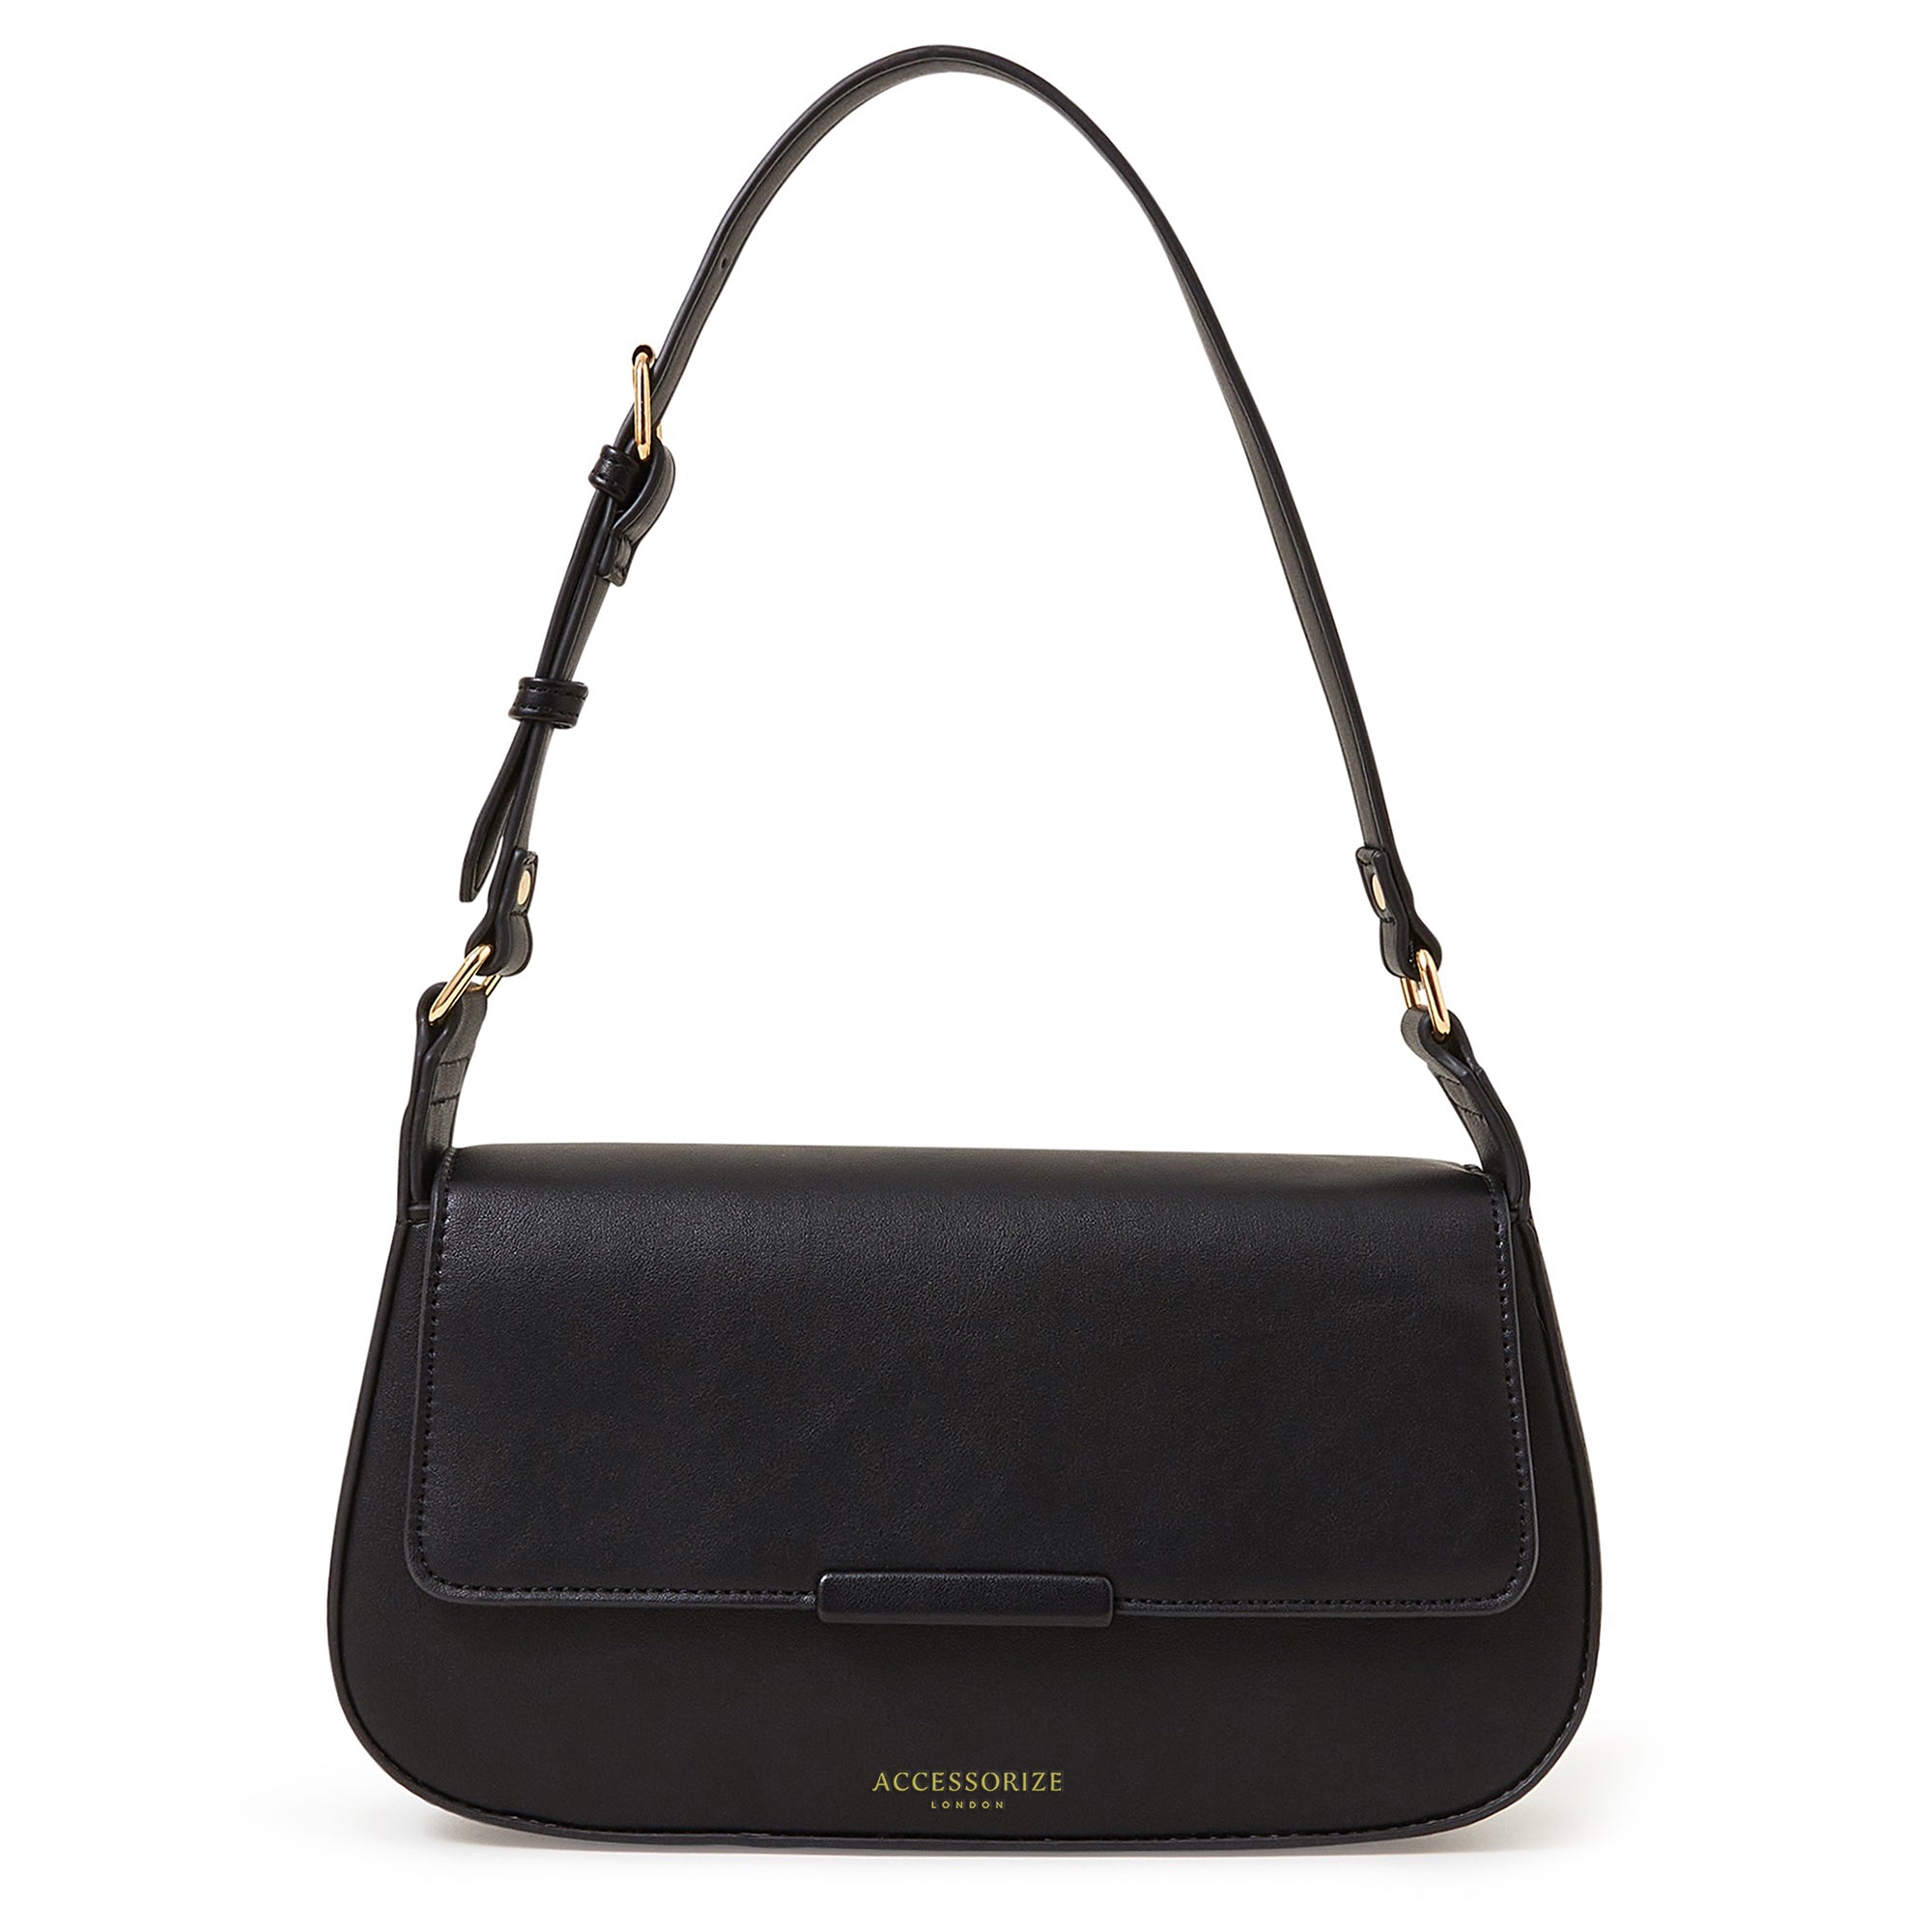 Accessorize London Women's Faux Leather Black Buckle Strap Bar Shoulder Bag